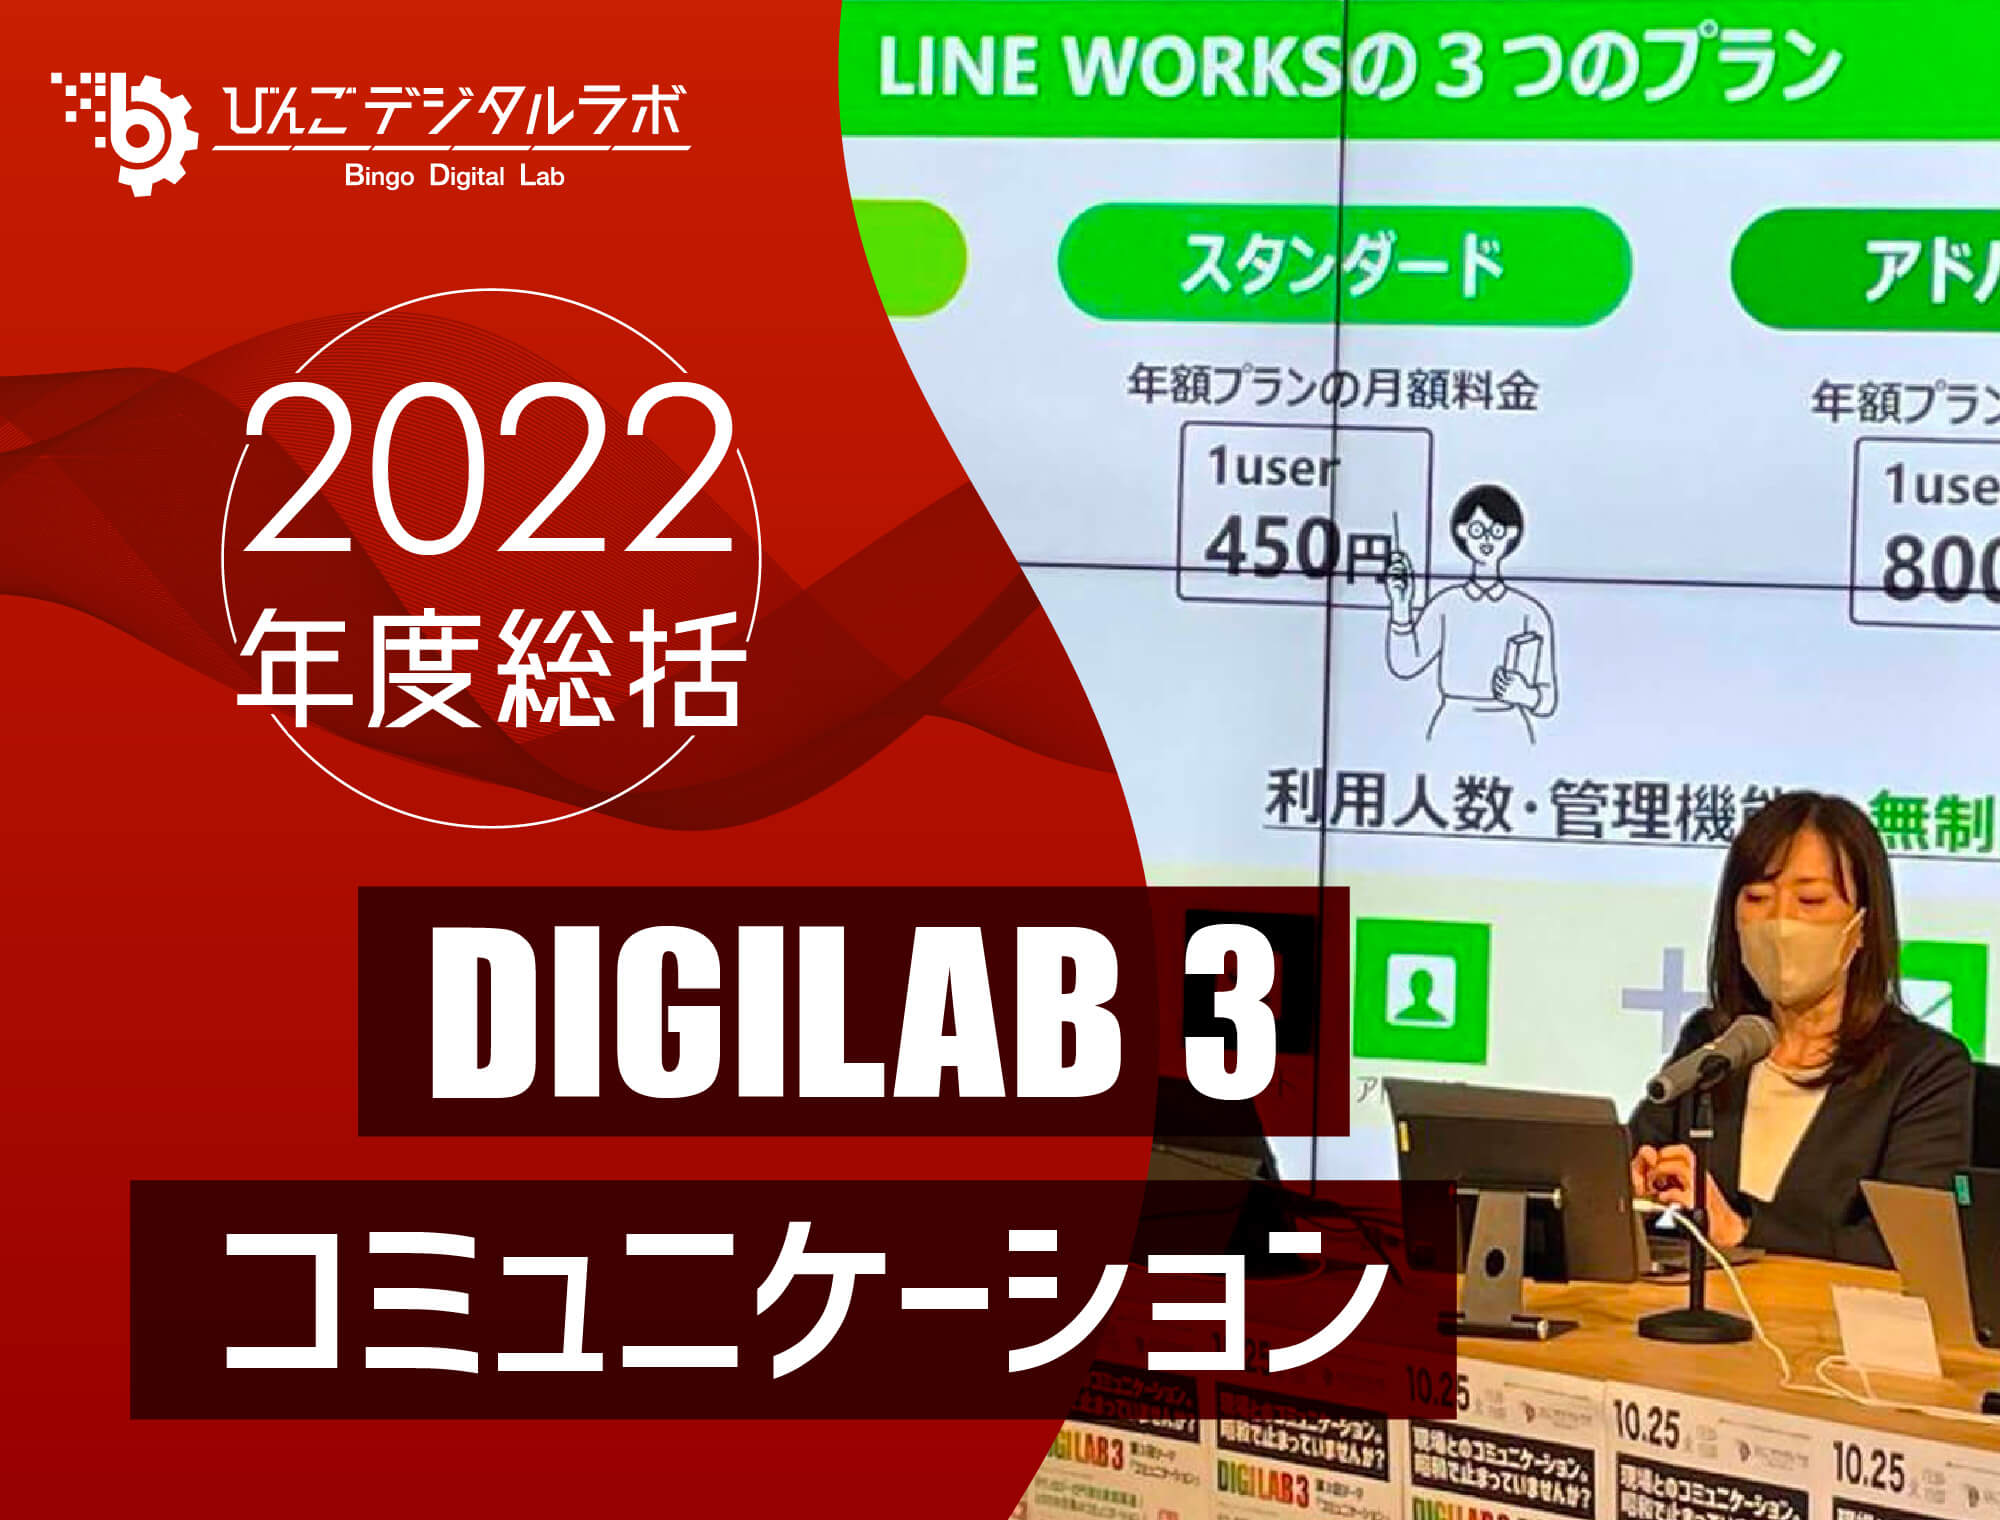 【2022年度総括】2022年度 第3回びんごデジタルラボイベント『DIGILAB3』を実施しました〜「テクノロジーで円滑な意思疎通！となりの企業のコミュニケーション」～